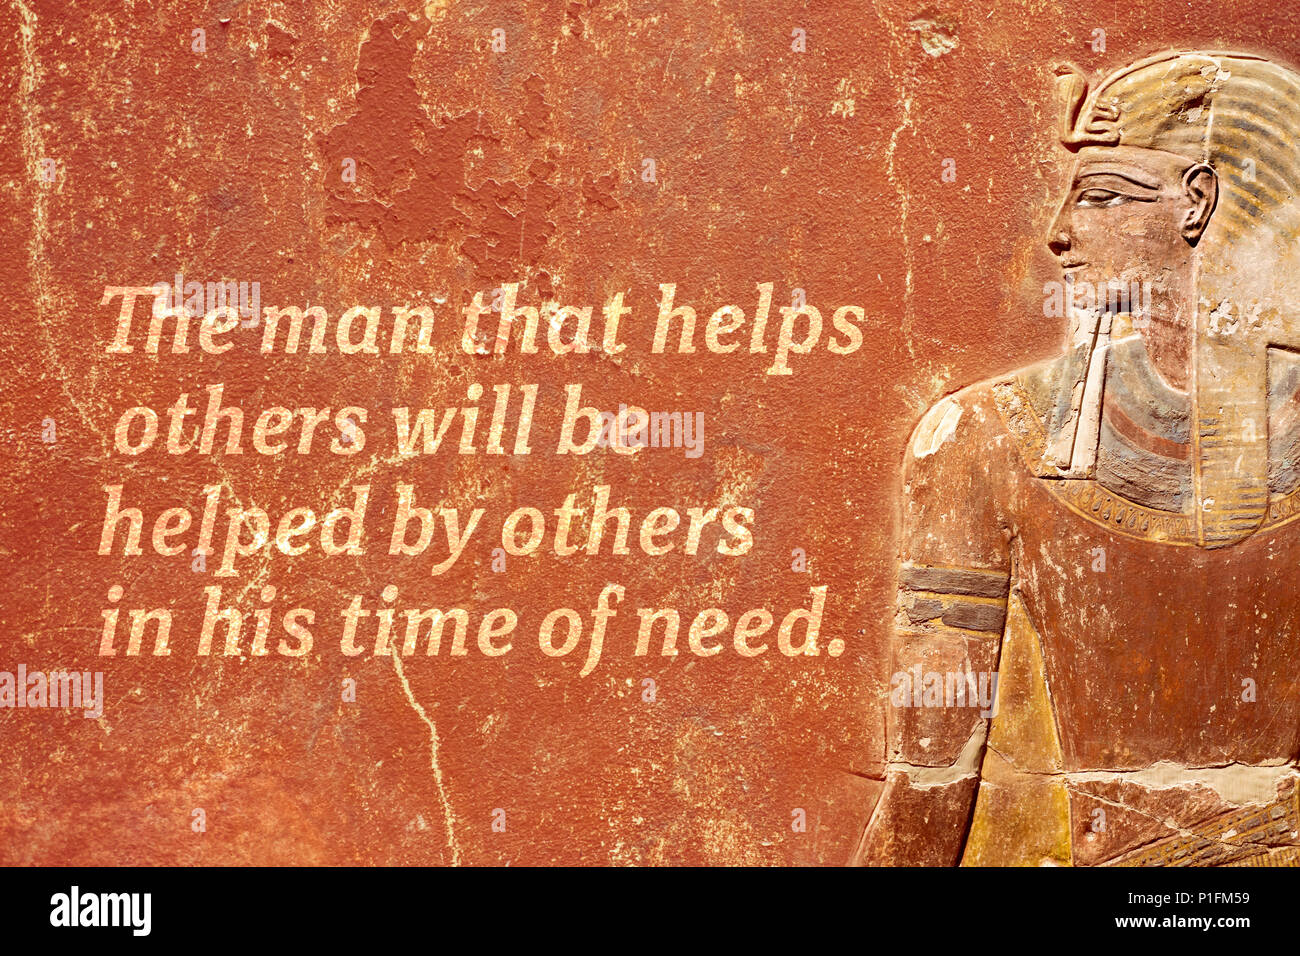 Der Mensch, der anderen hilft, wird geholfen - alten ägyptischen Sprichwort auf Roten grunge Wand gedruckt werden Stockfoto